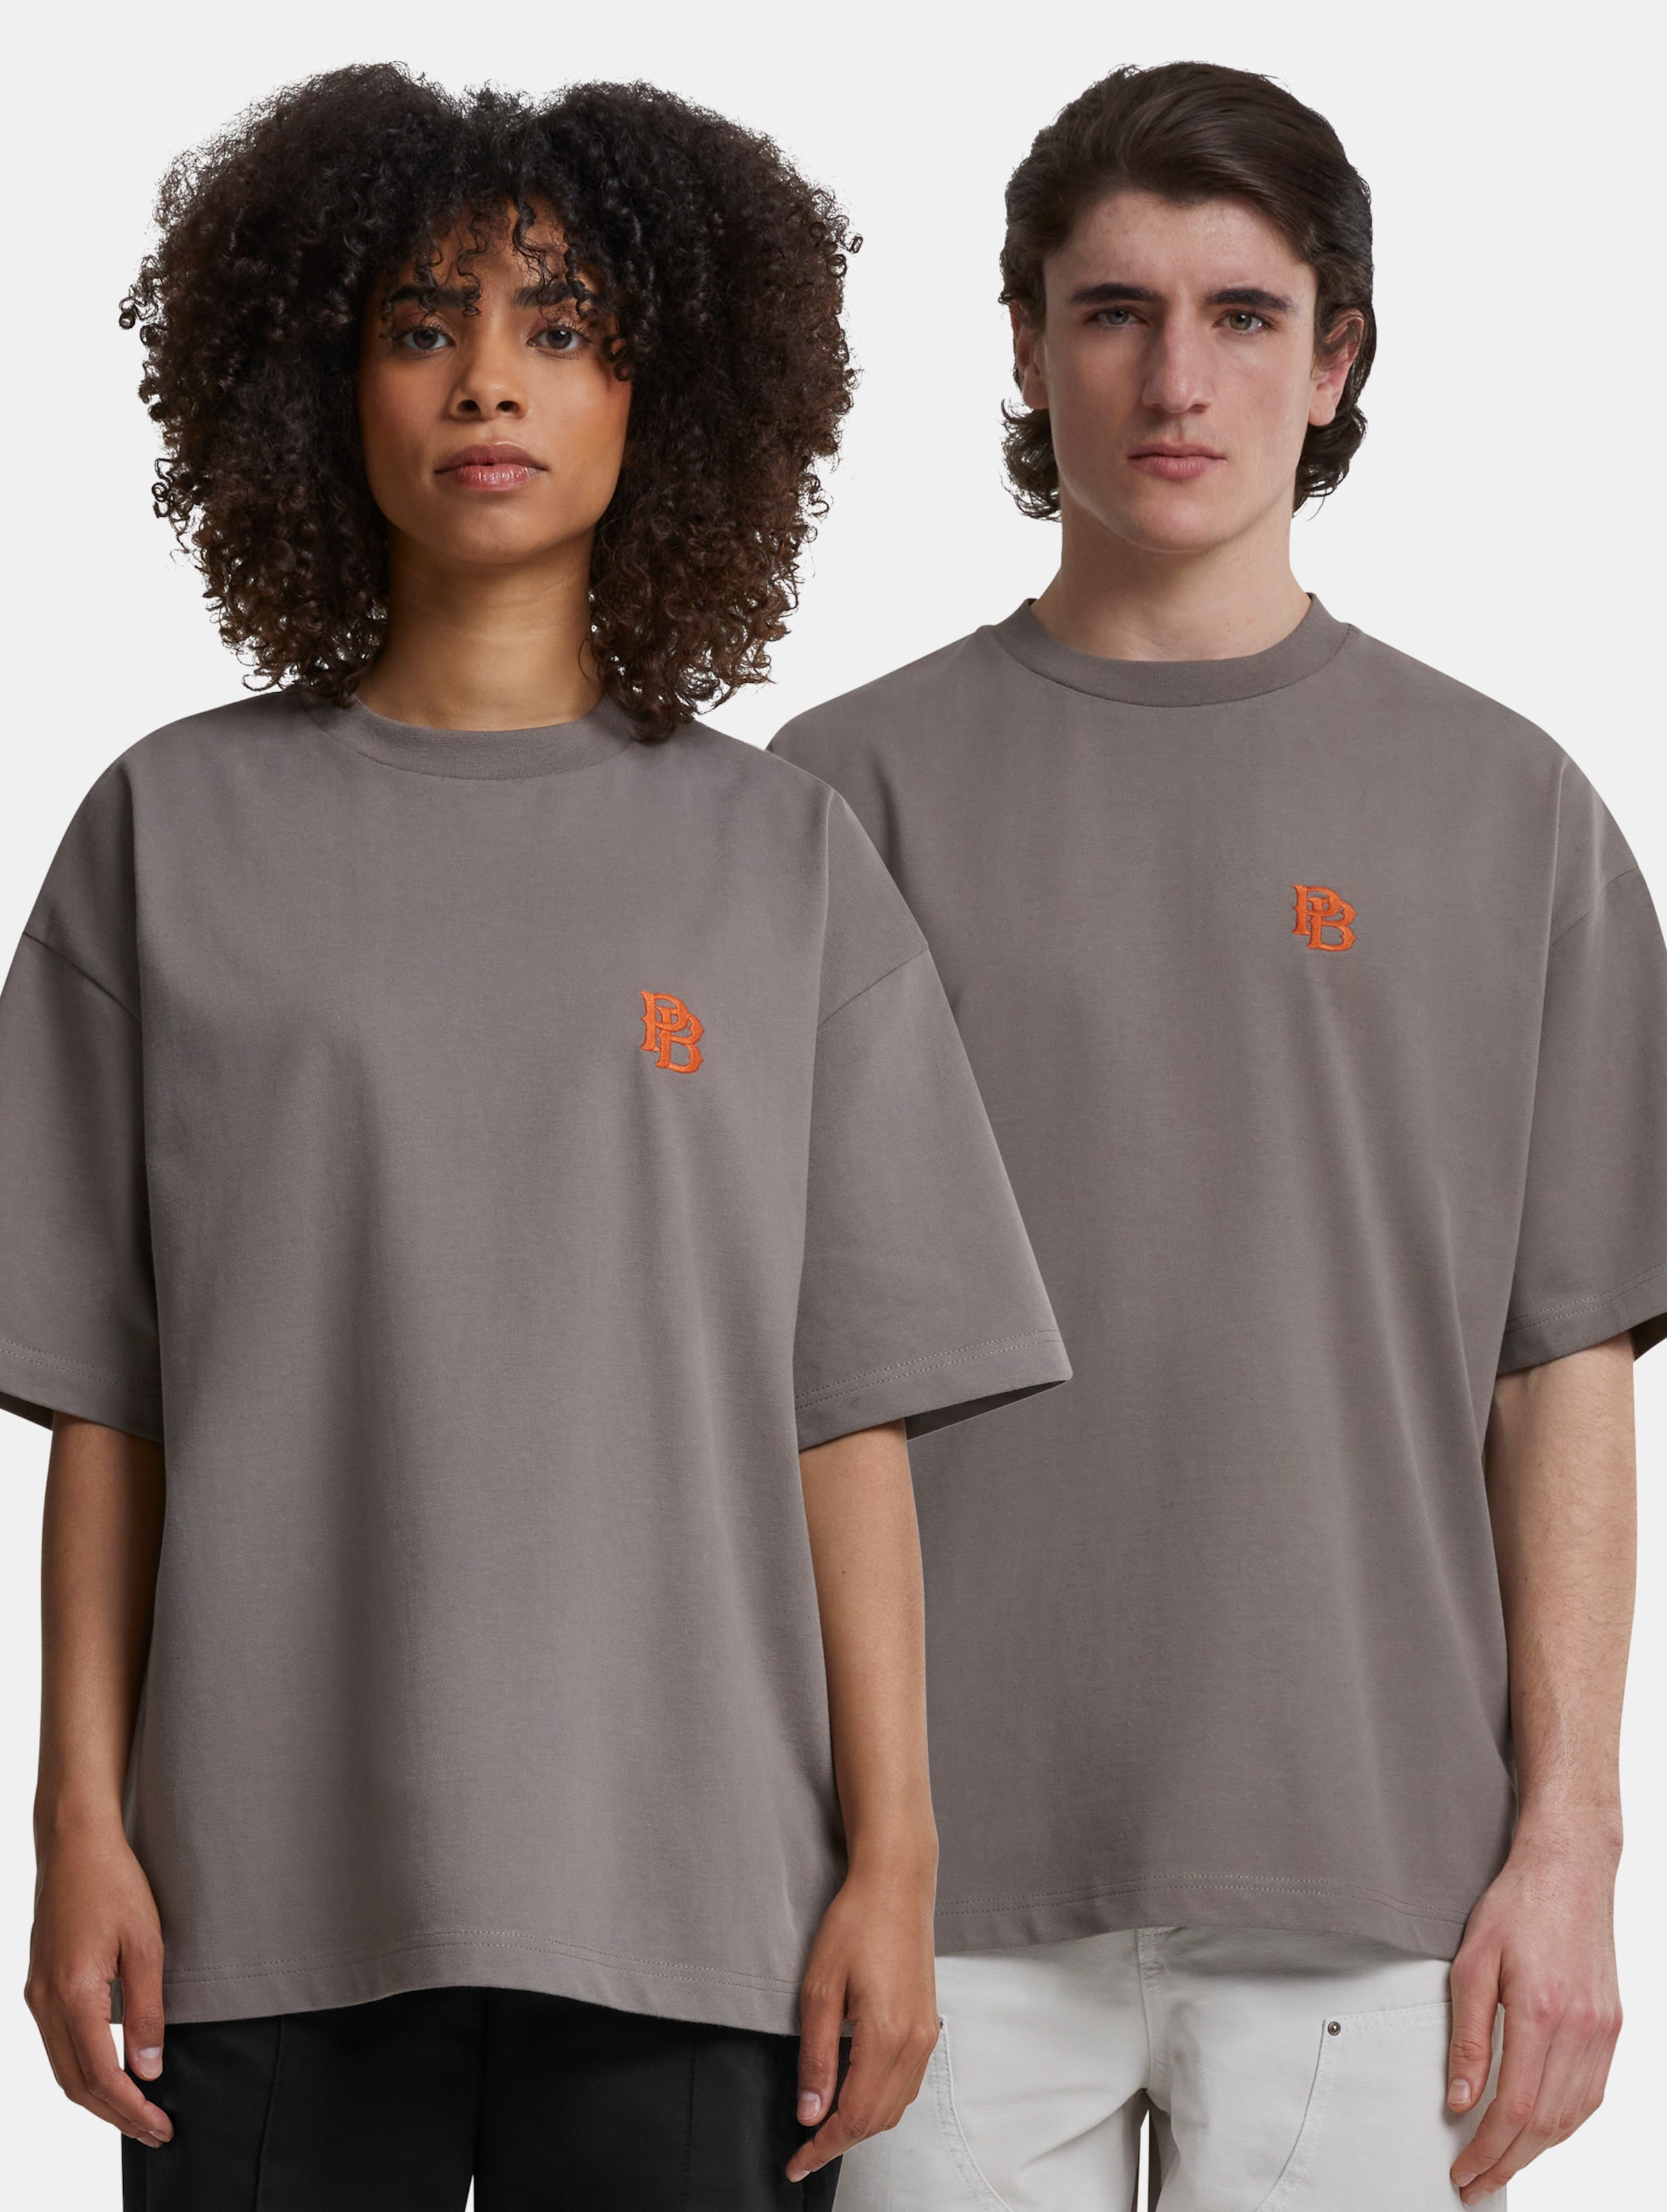 Prohibited Pitch T-Shirts Frauen,Männer,Unisex op kleur grijs, Maat S